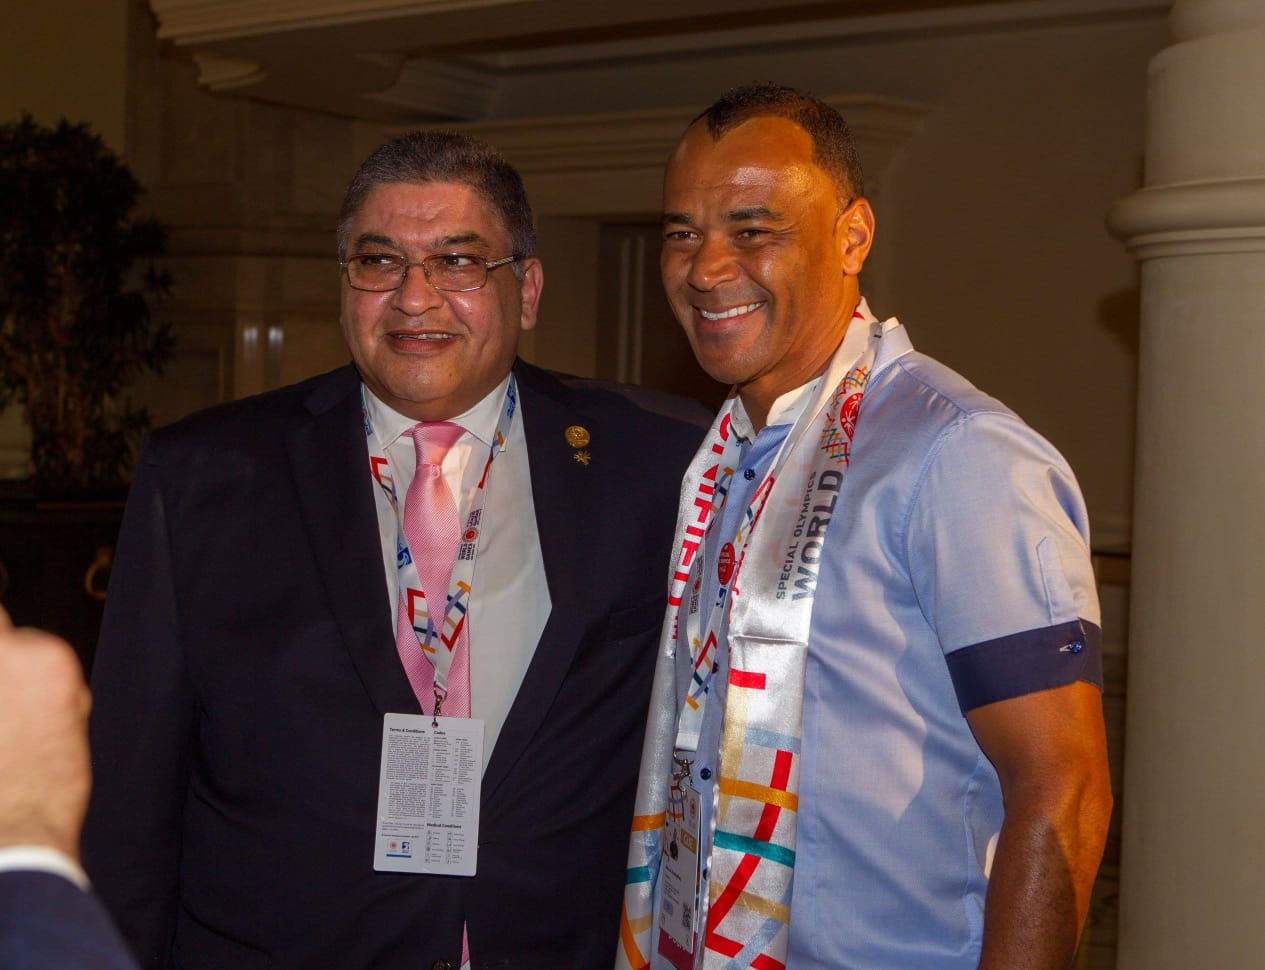 كافو ودورجبا يظهران فى ملاعب منافسات الأولمبياد الخاص بأبو ظبى 